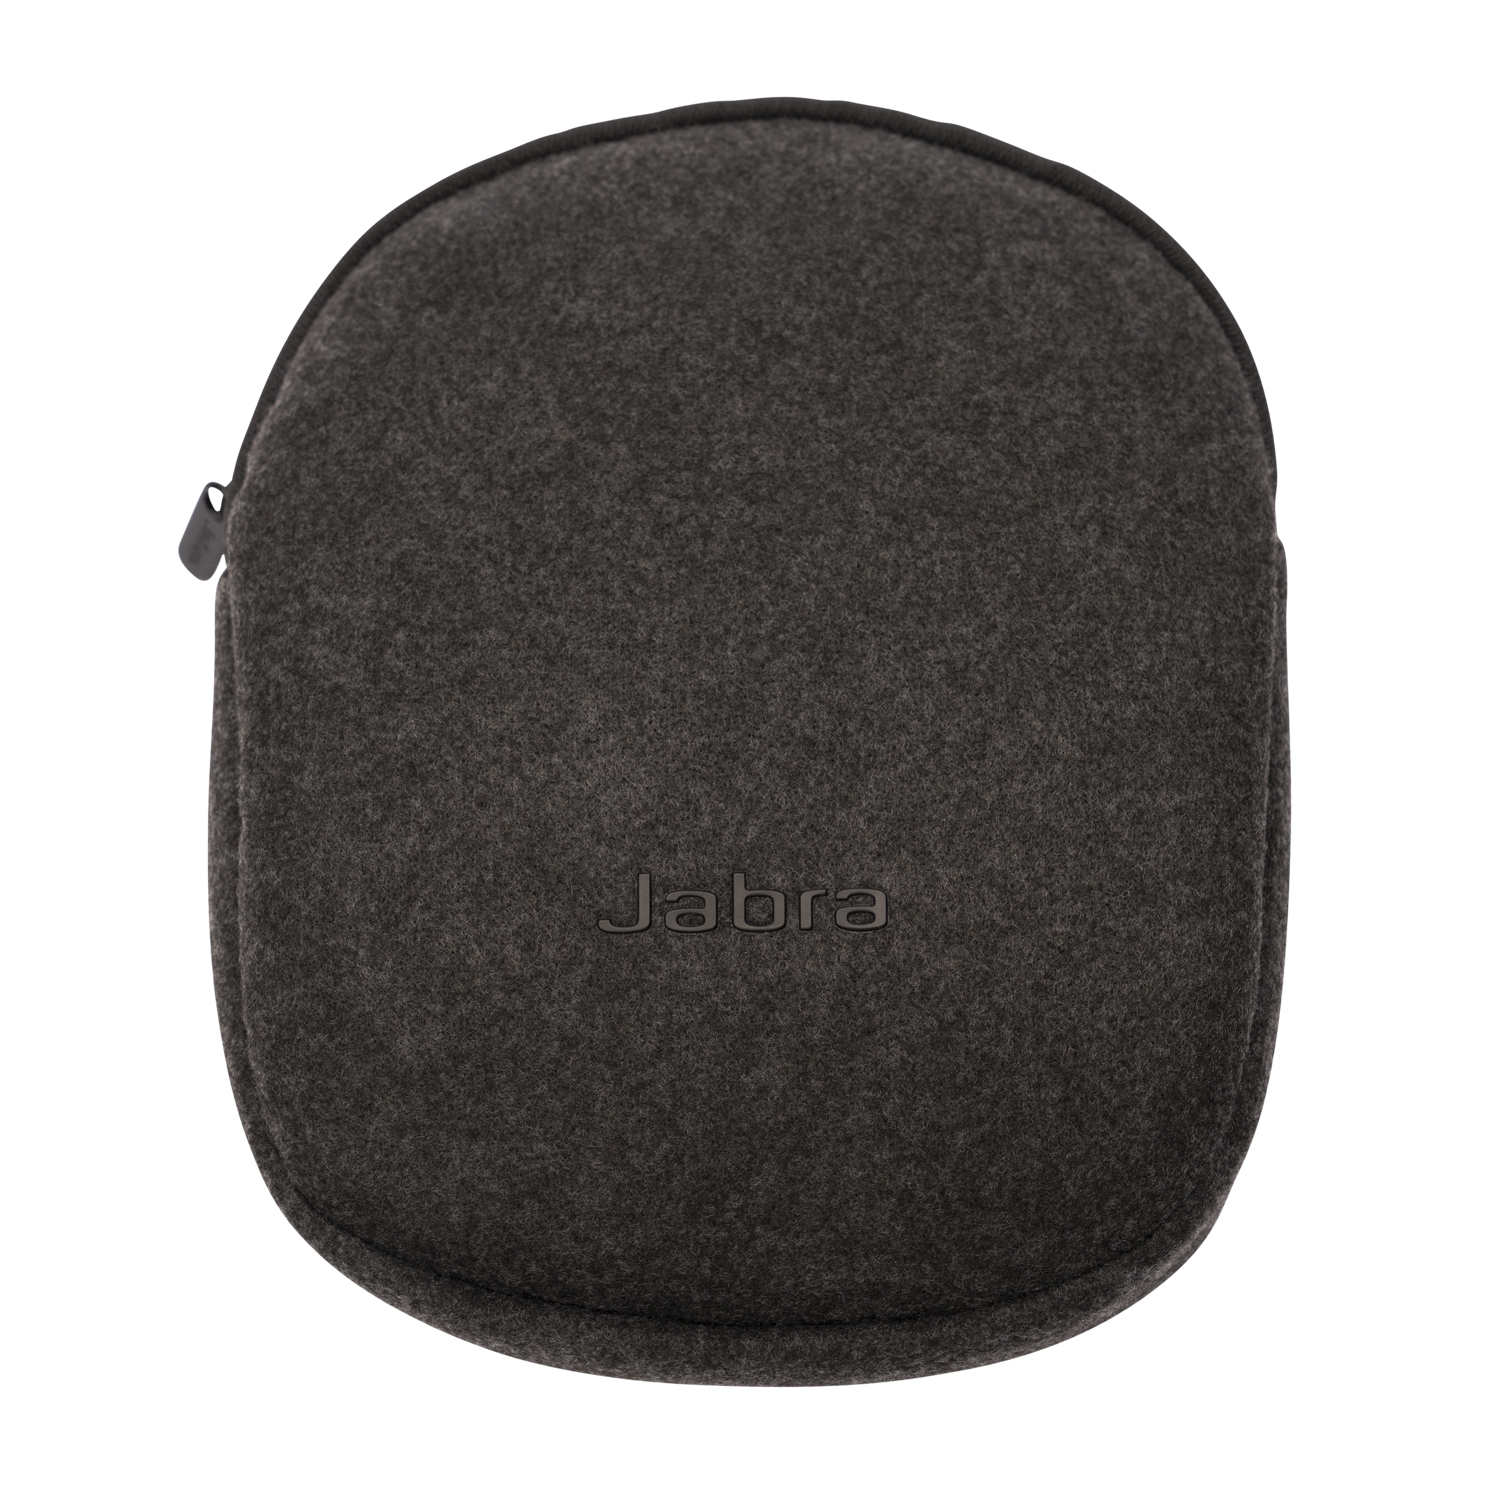 Jabra Carry - Tasche für Headset - Schwarz